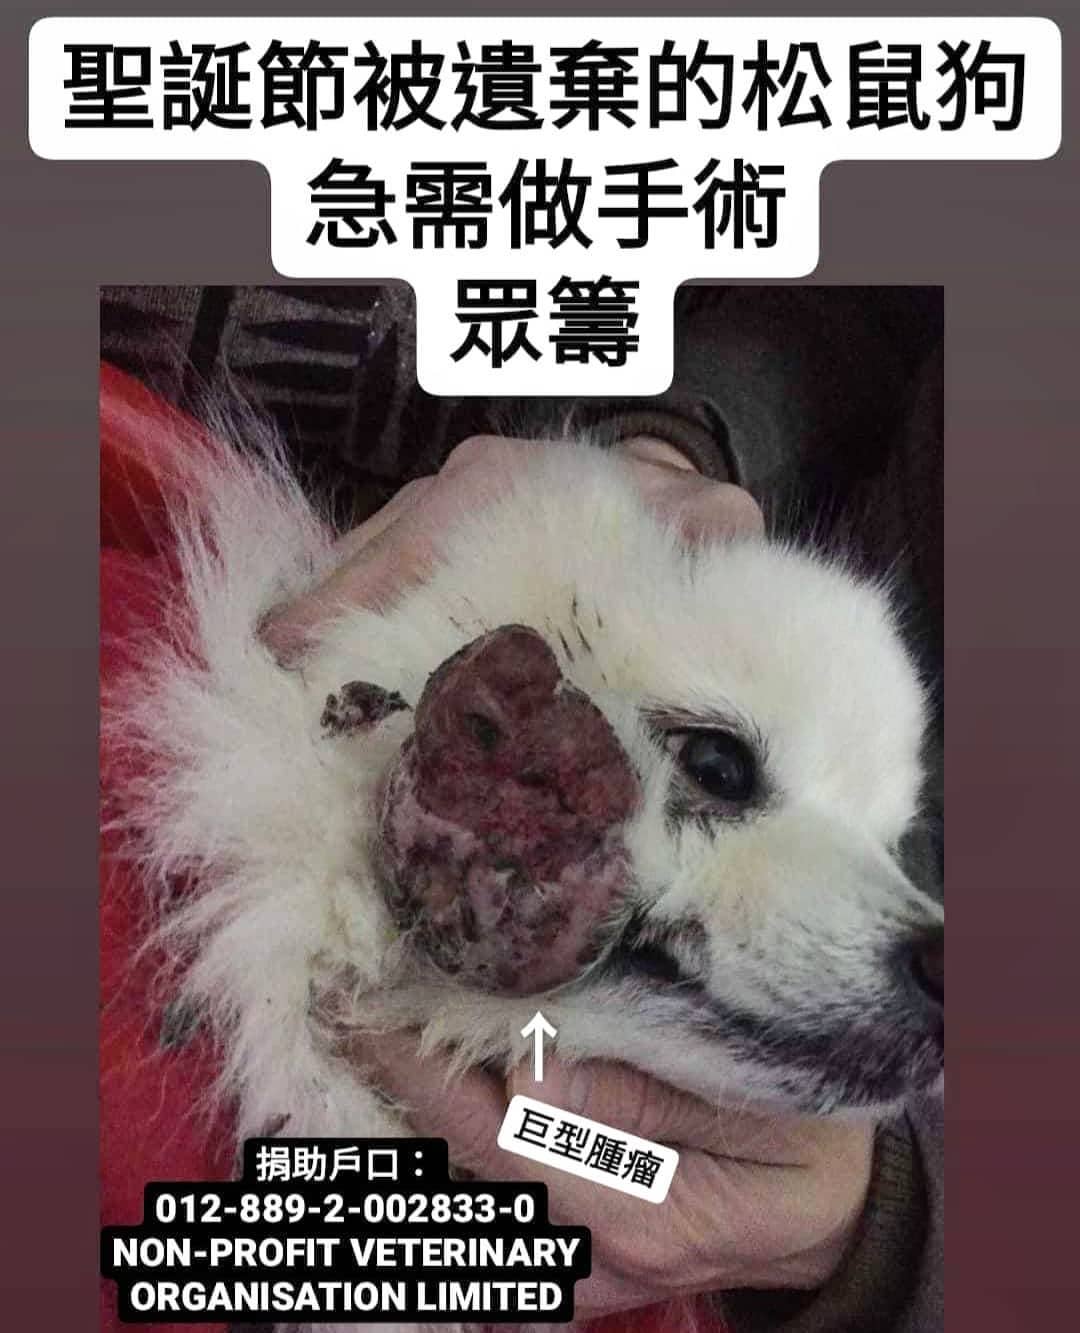 臉上長了一顆“巨型腫瘤”松鼠狗遺棄個案 – Arc 動物救援 2020年